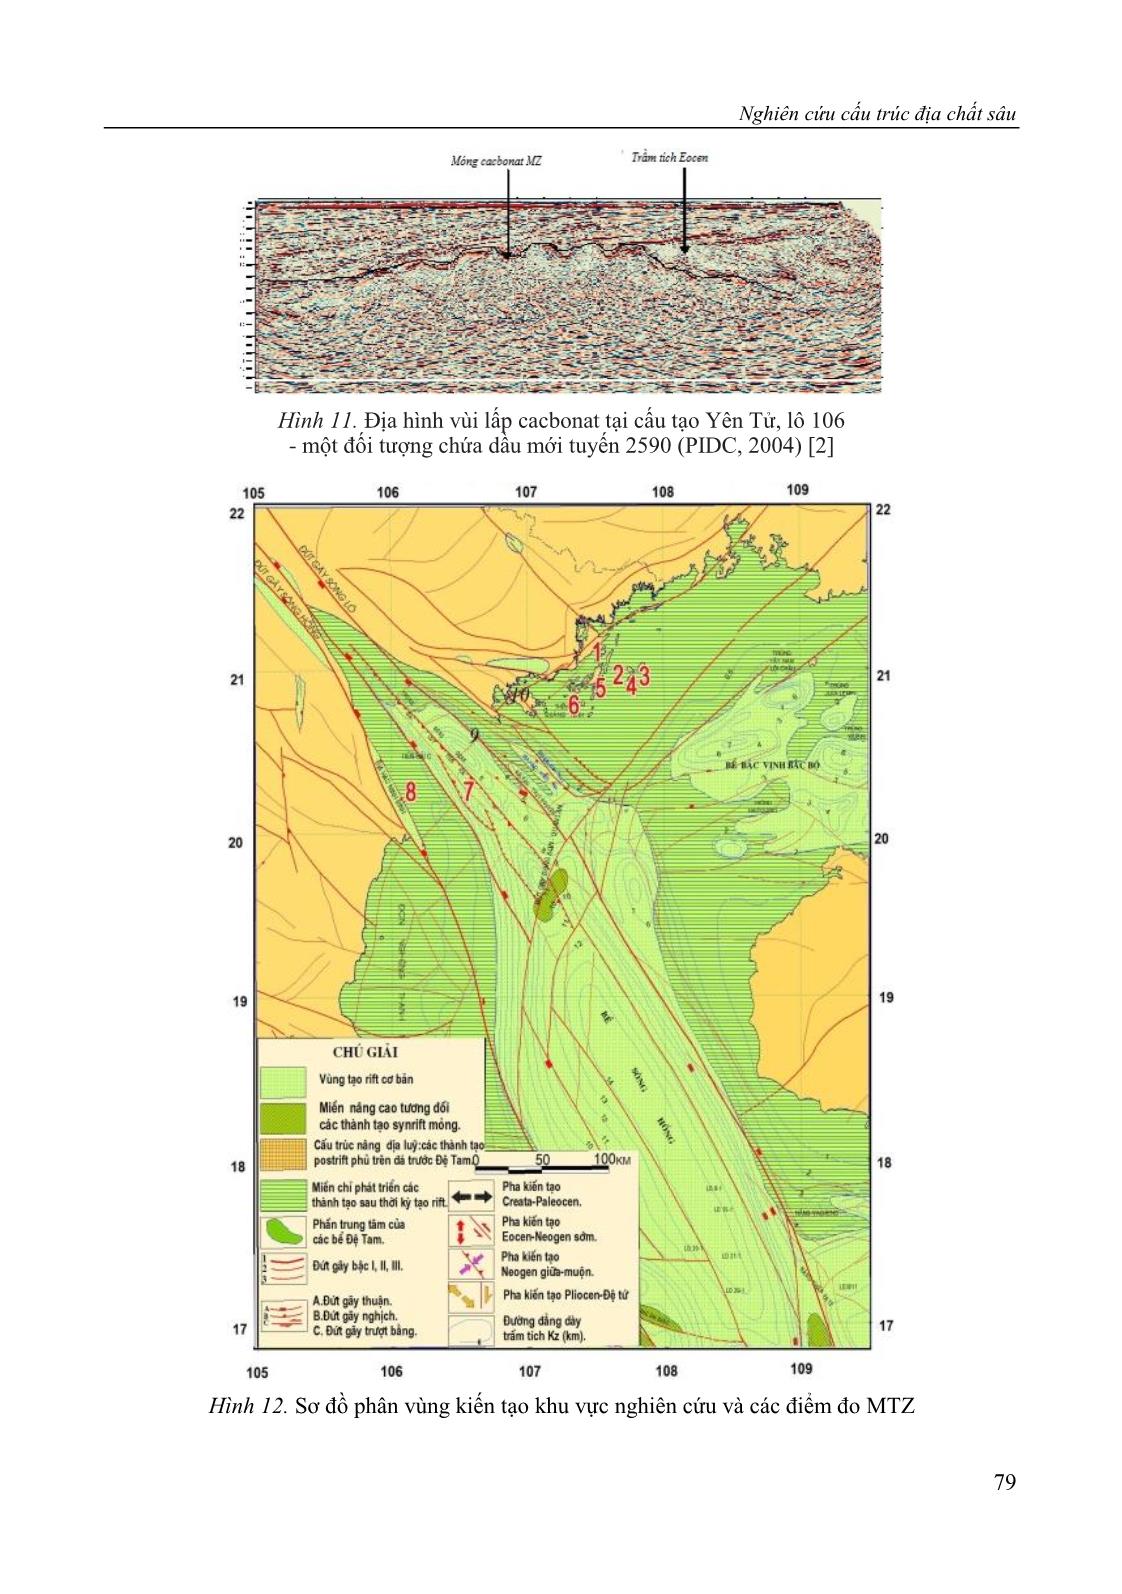 Nghiên cứu cấu trúc địa chất sâu và dự báo một số khu vực có triển vọng dầu khí thuộc dải ven biển châu thổ sông Hồng theo tài liệu địa vật lý trang 9